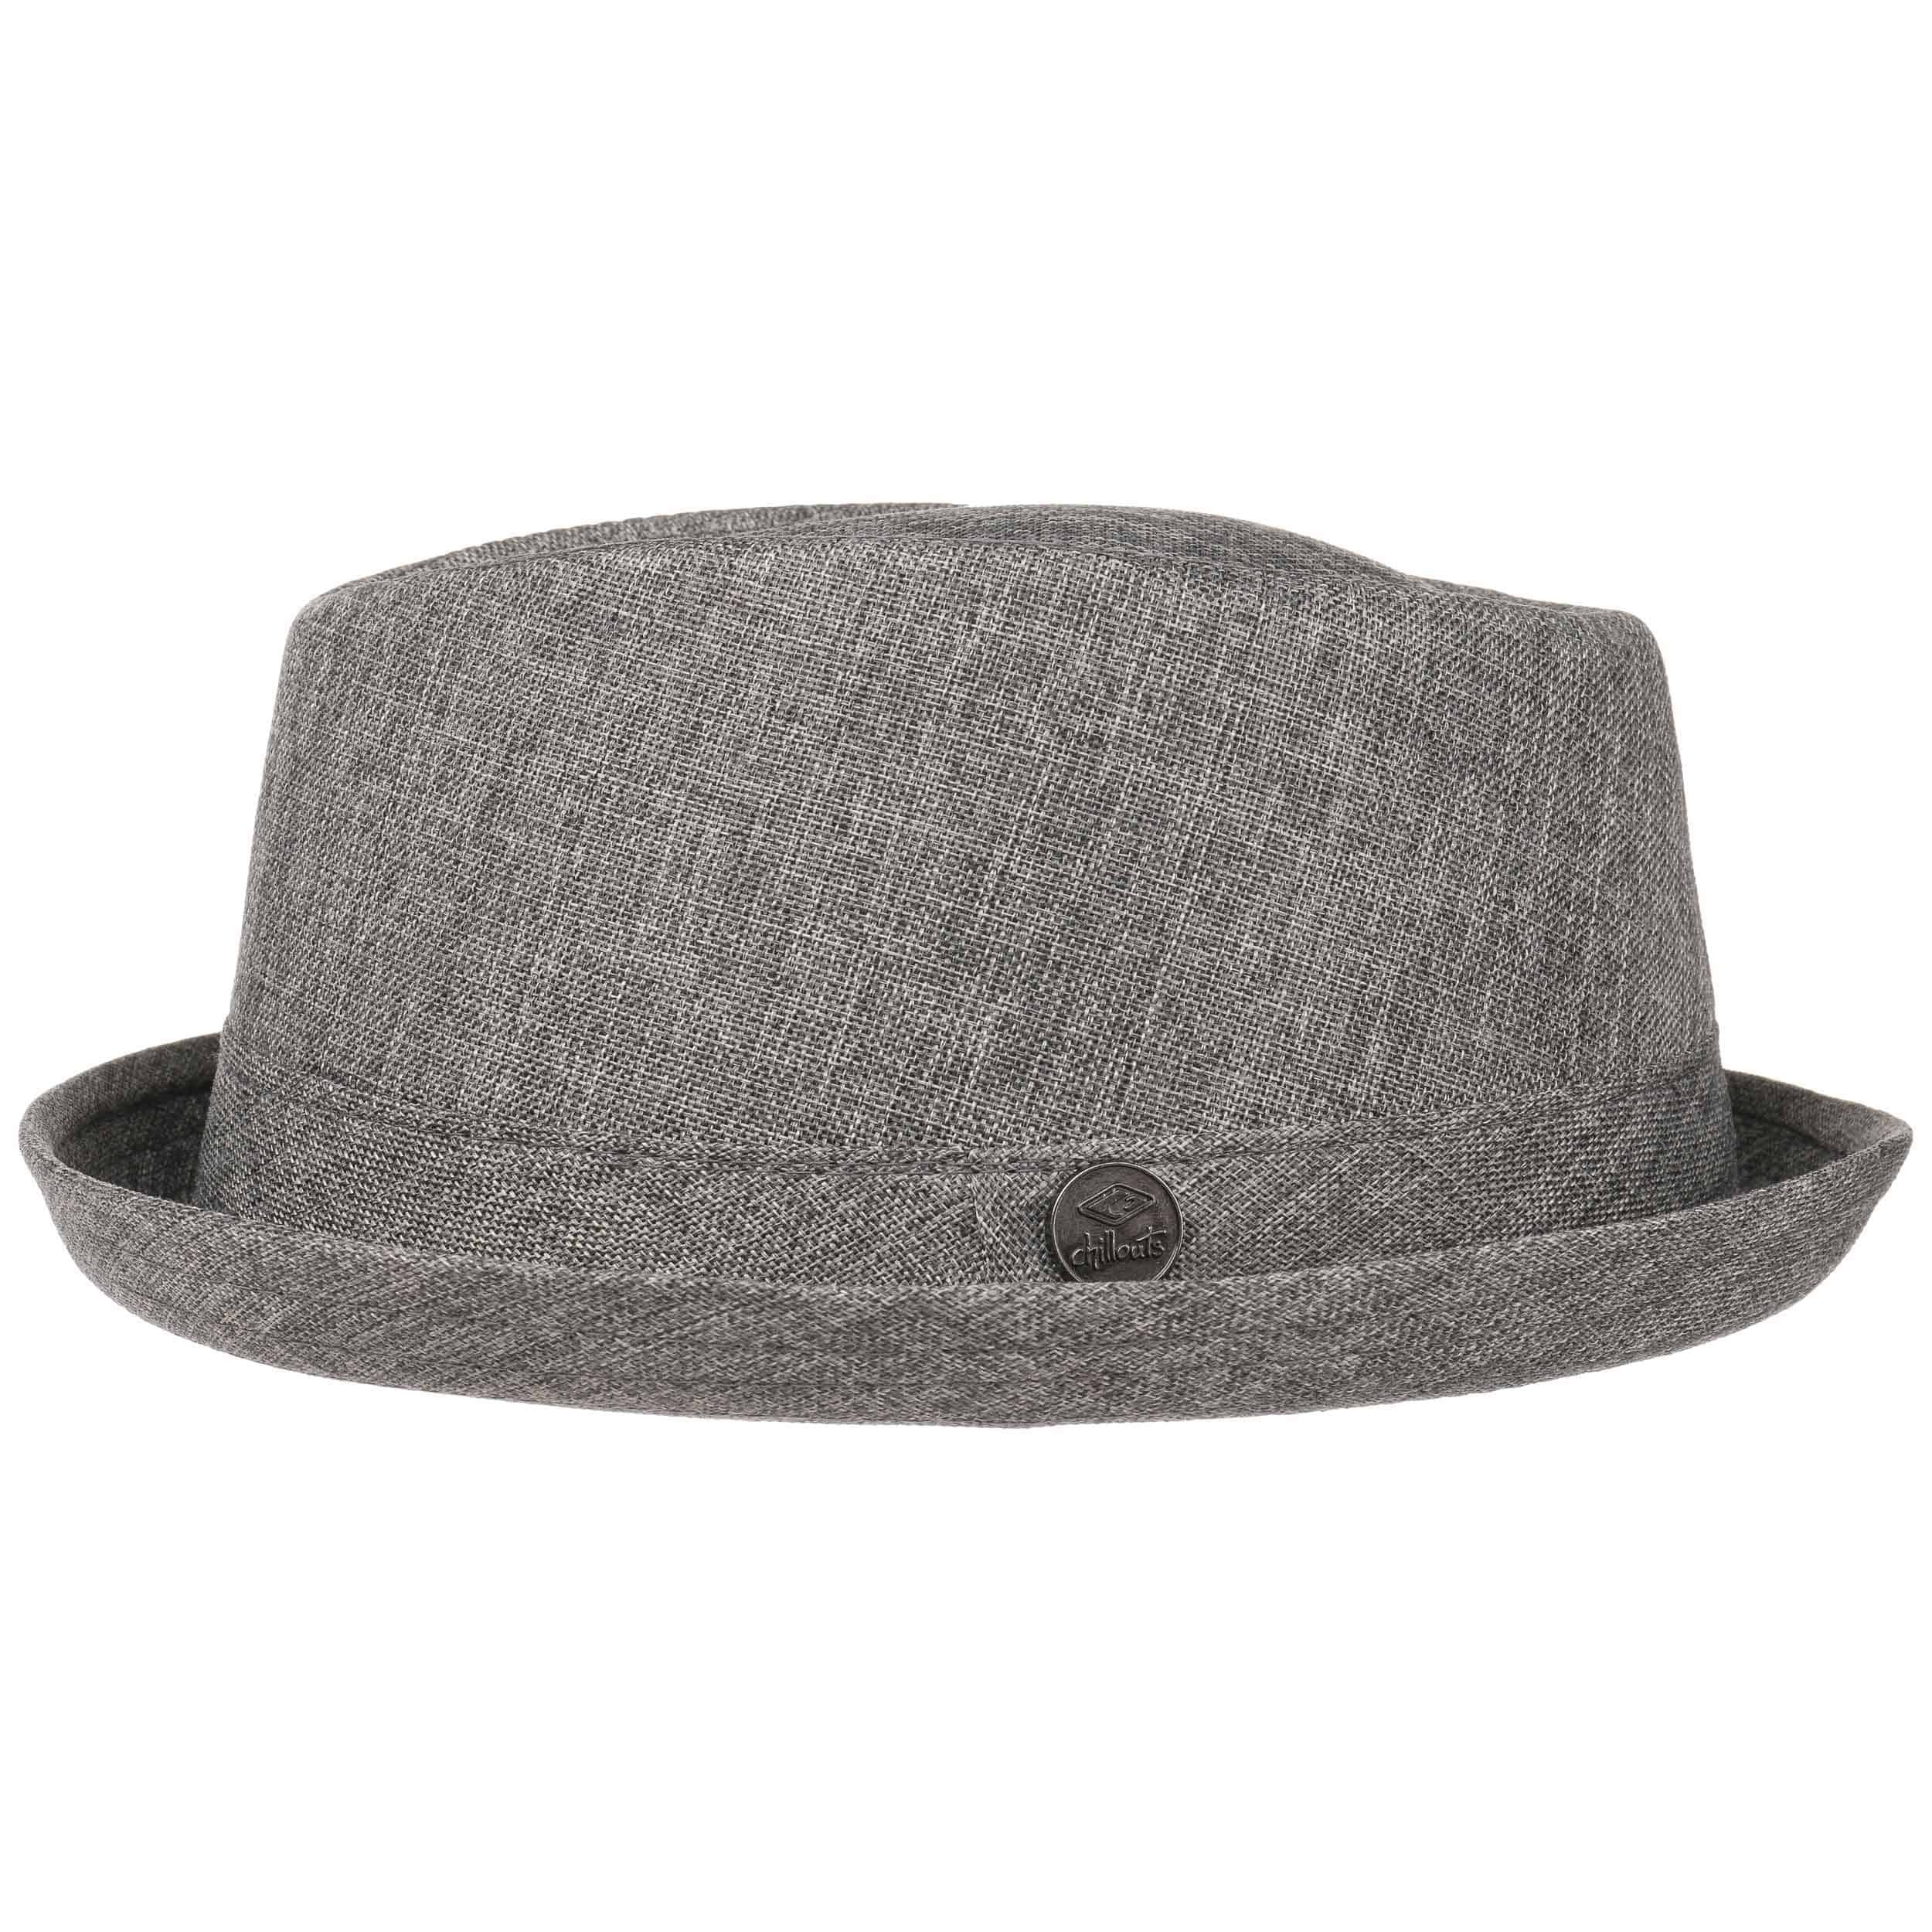 Sombrero Balboa Player by Chillouts sombrero de veranosombrero de cáñamo sombrero de verano 